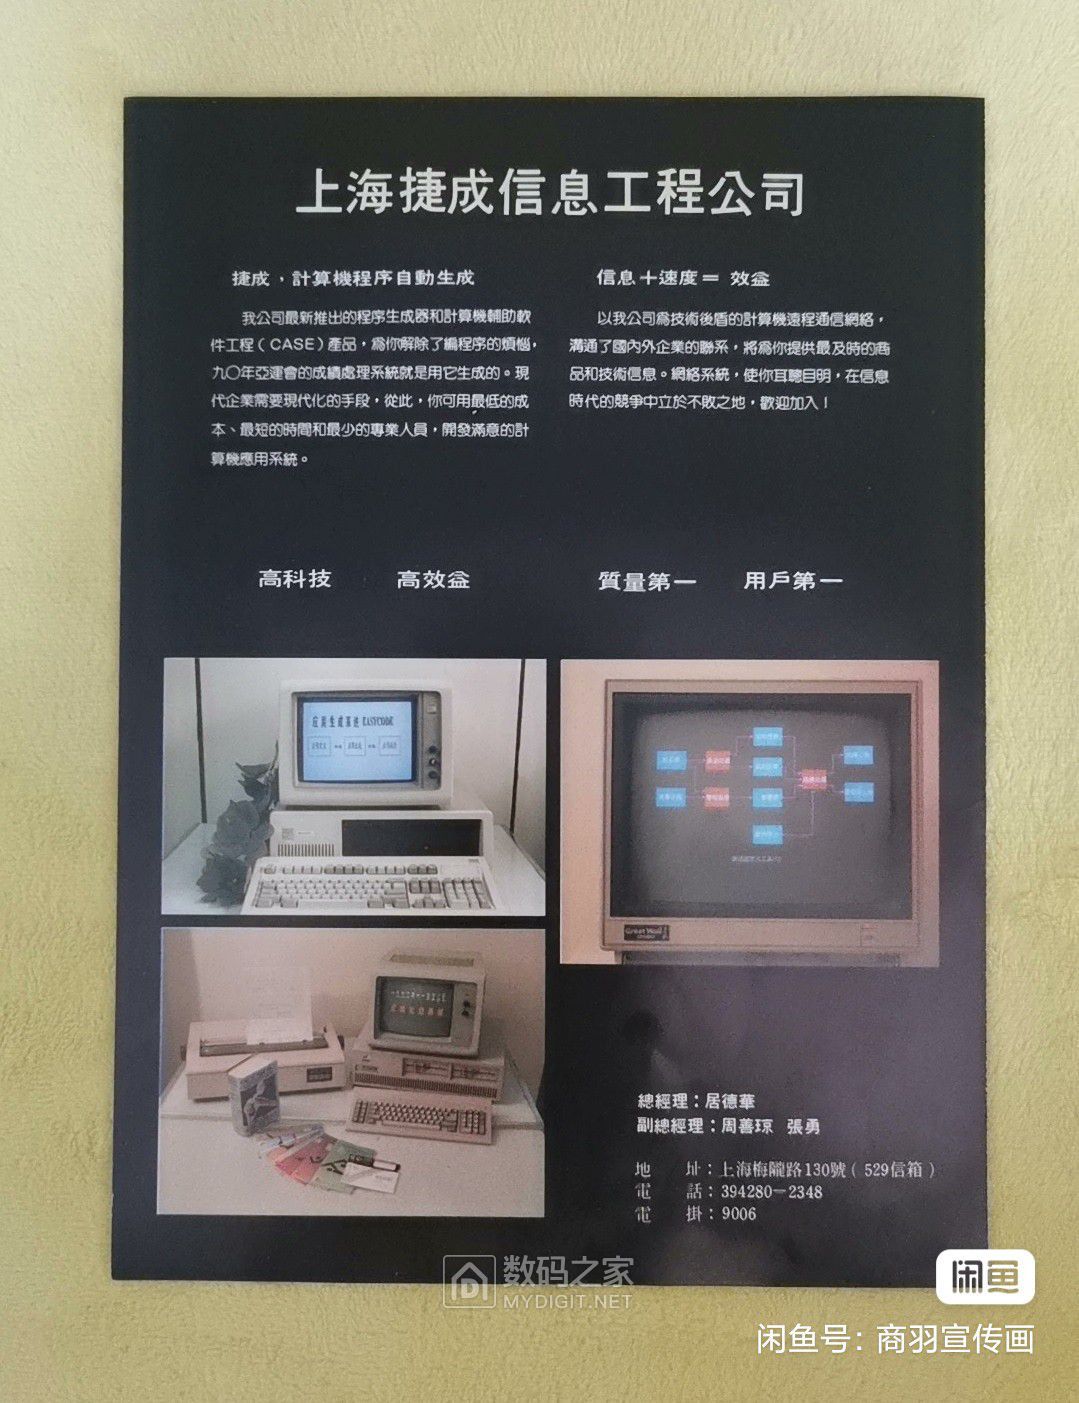 4-上海捷成信息工程公司-捷成计算机程序